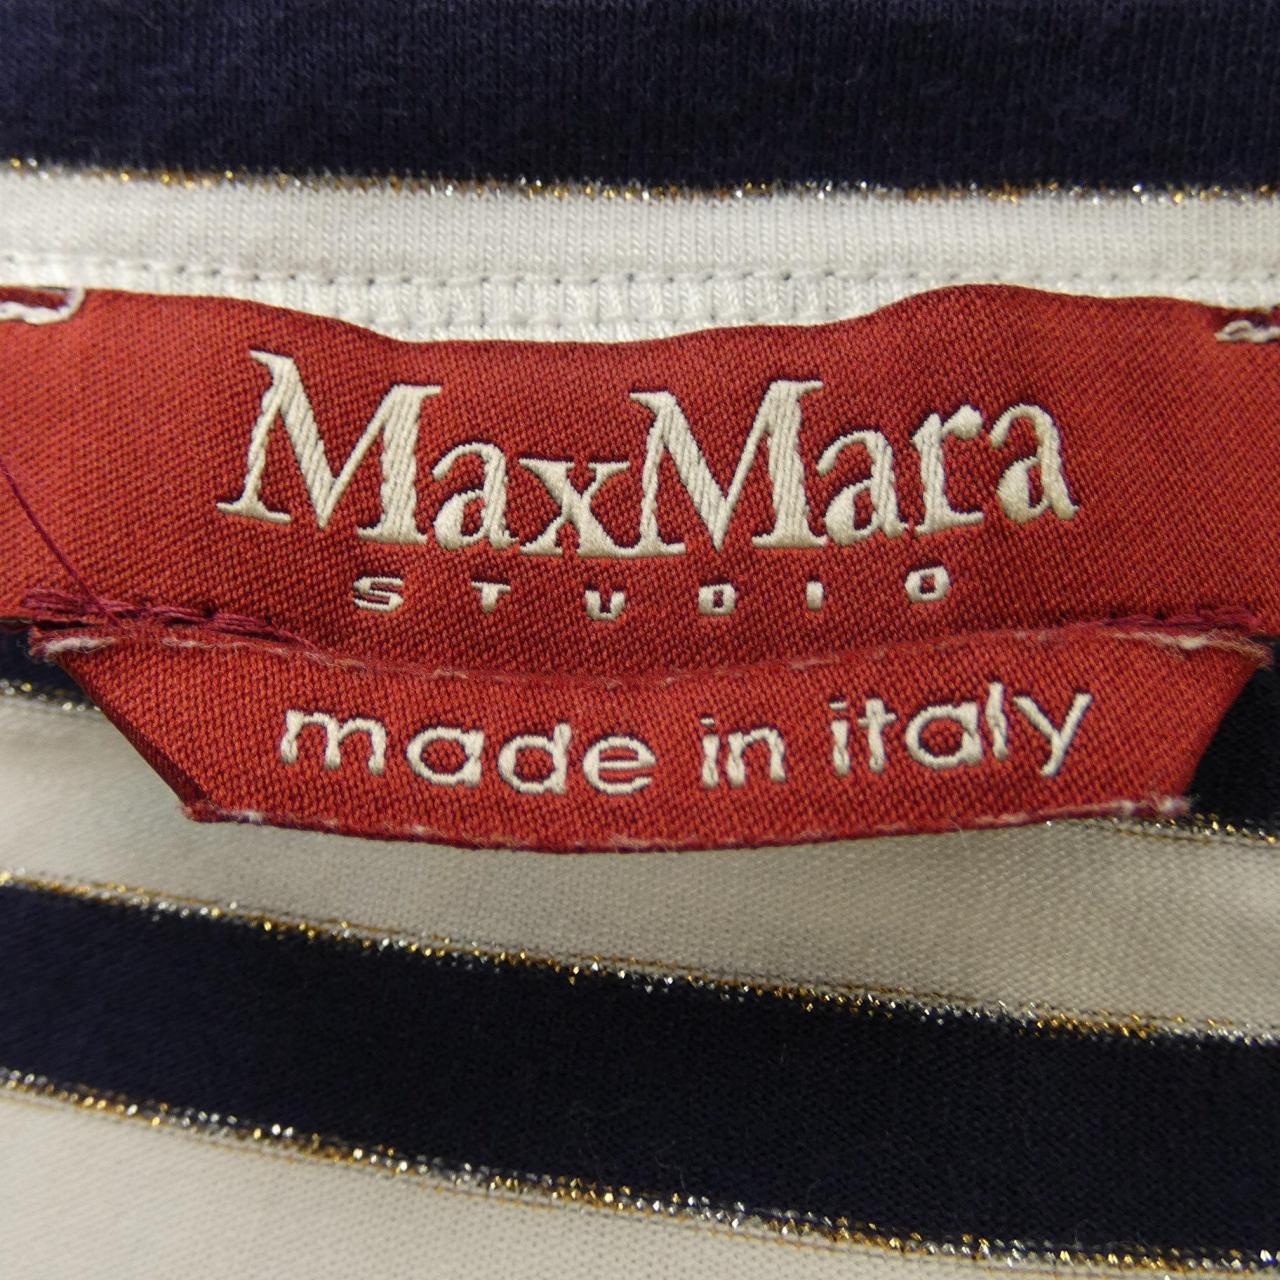 マックスマーラステュディオ Max Mara STUDIO トップス